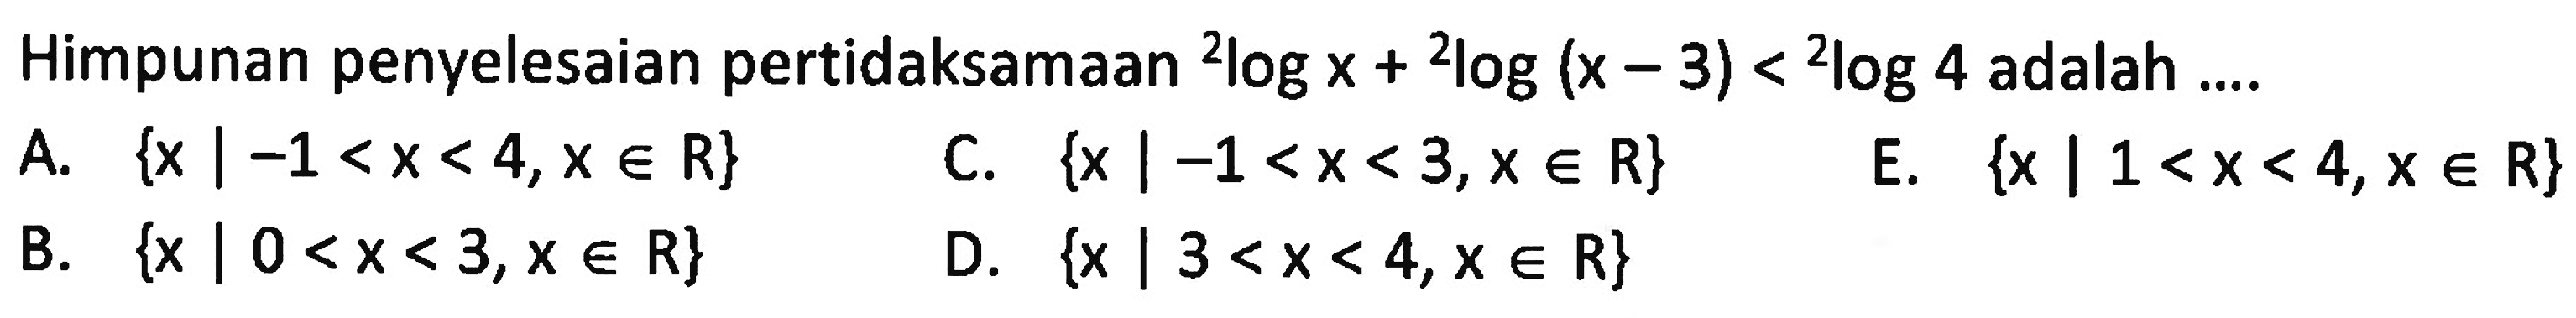 Himpunan penyelesaian pertidaksamaan 2logx+2log(x-3)<2log4 adalah ....